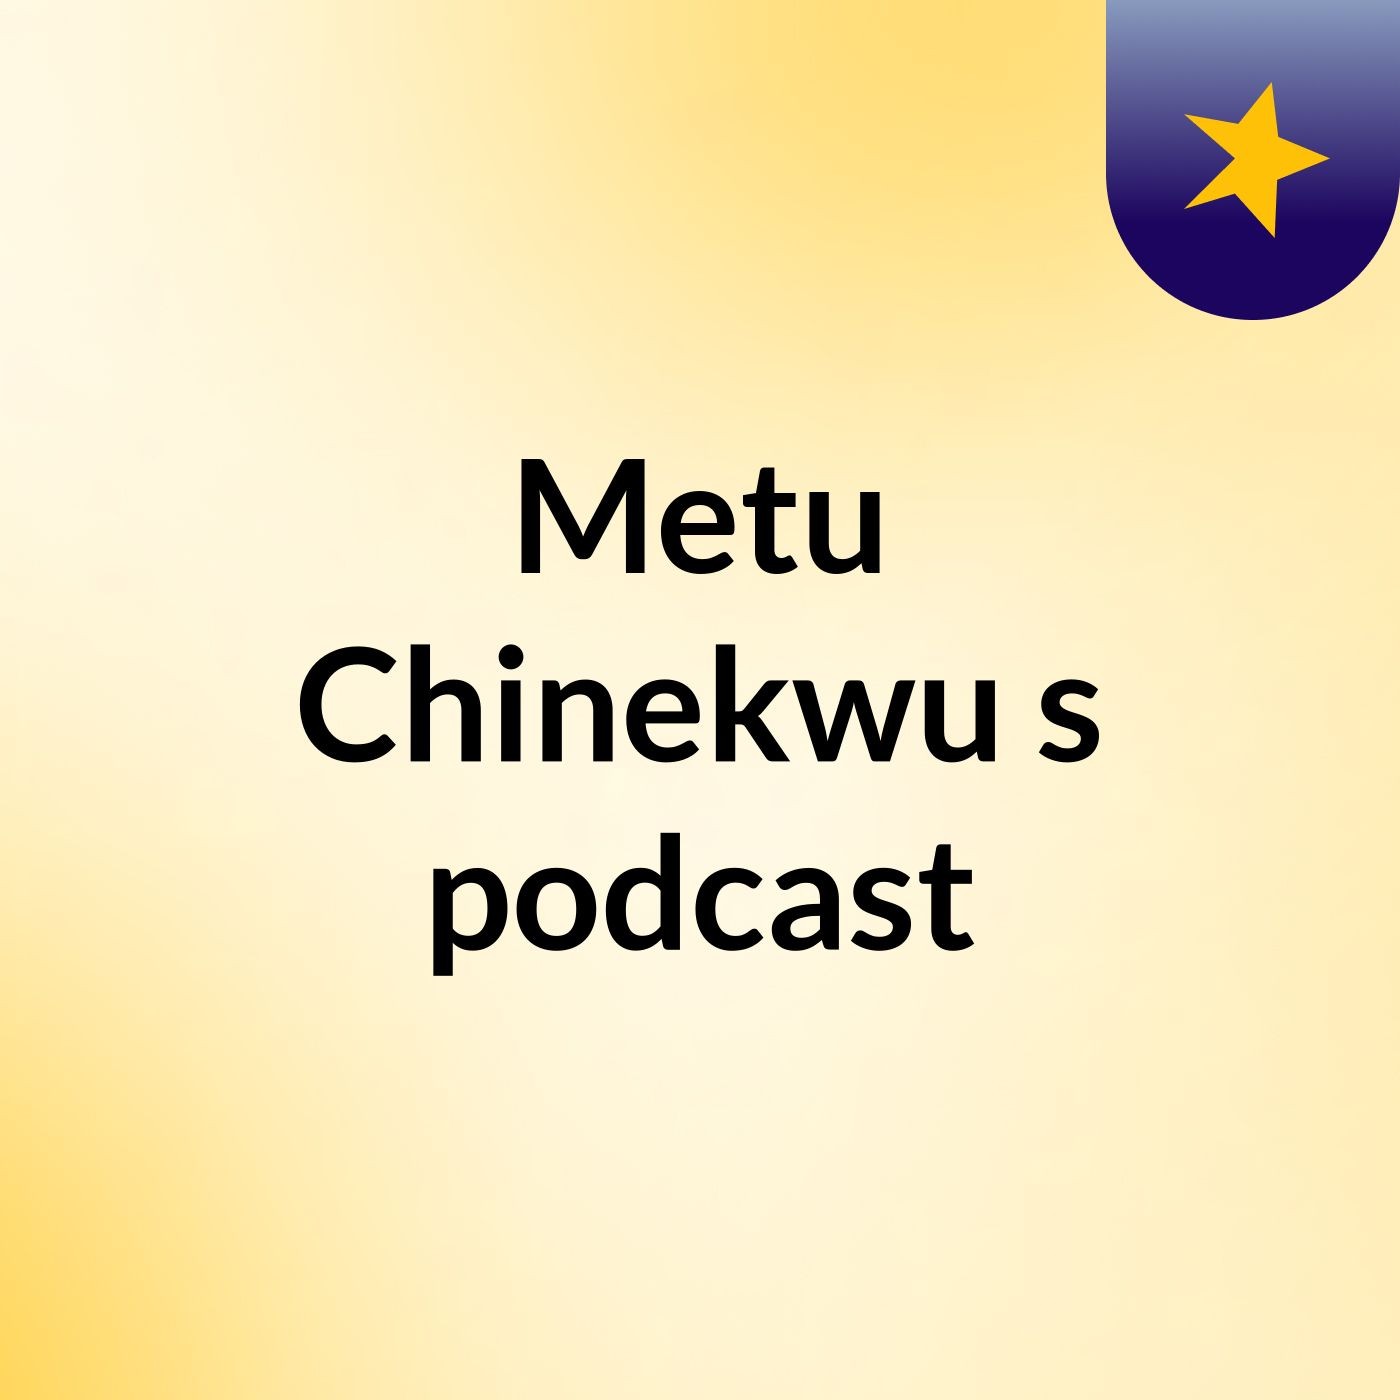 Metu Chinekwu's podcast